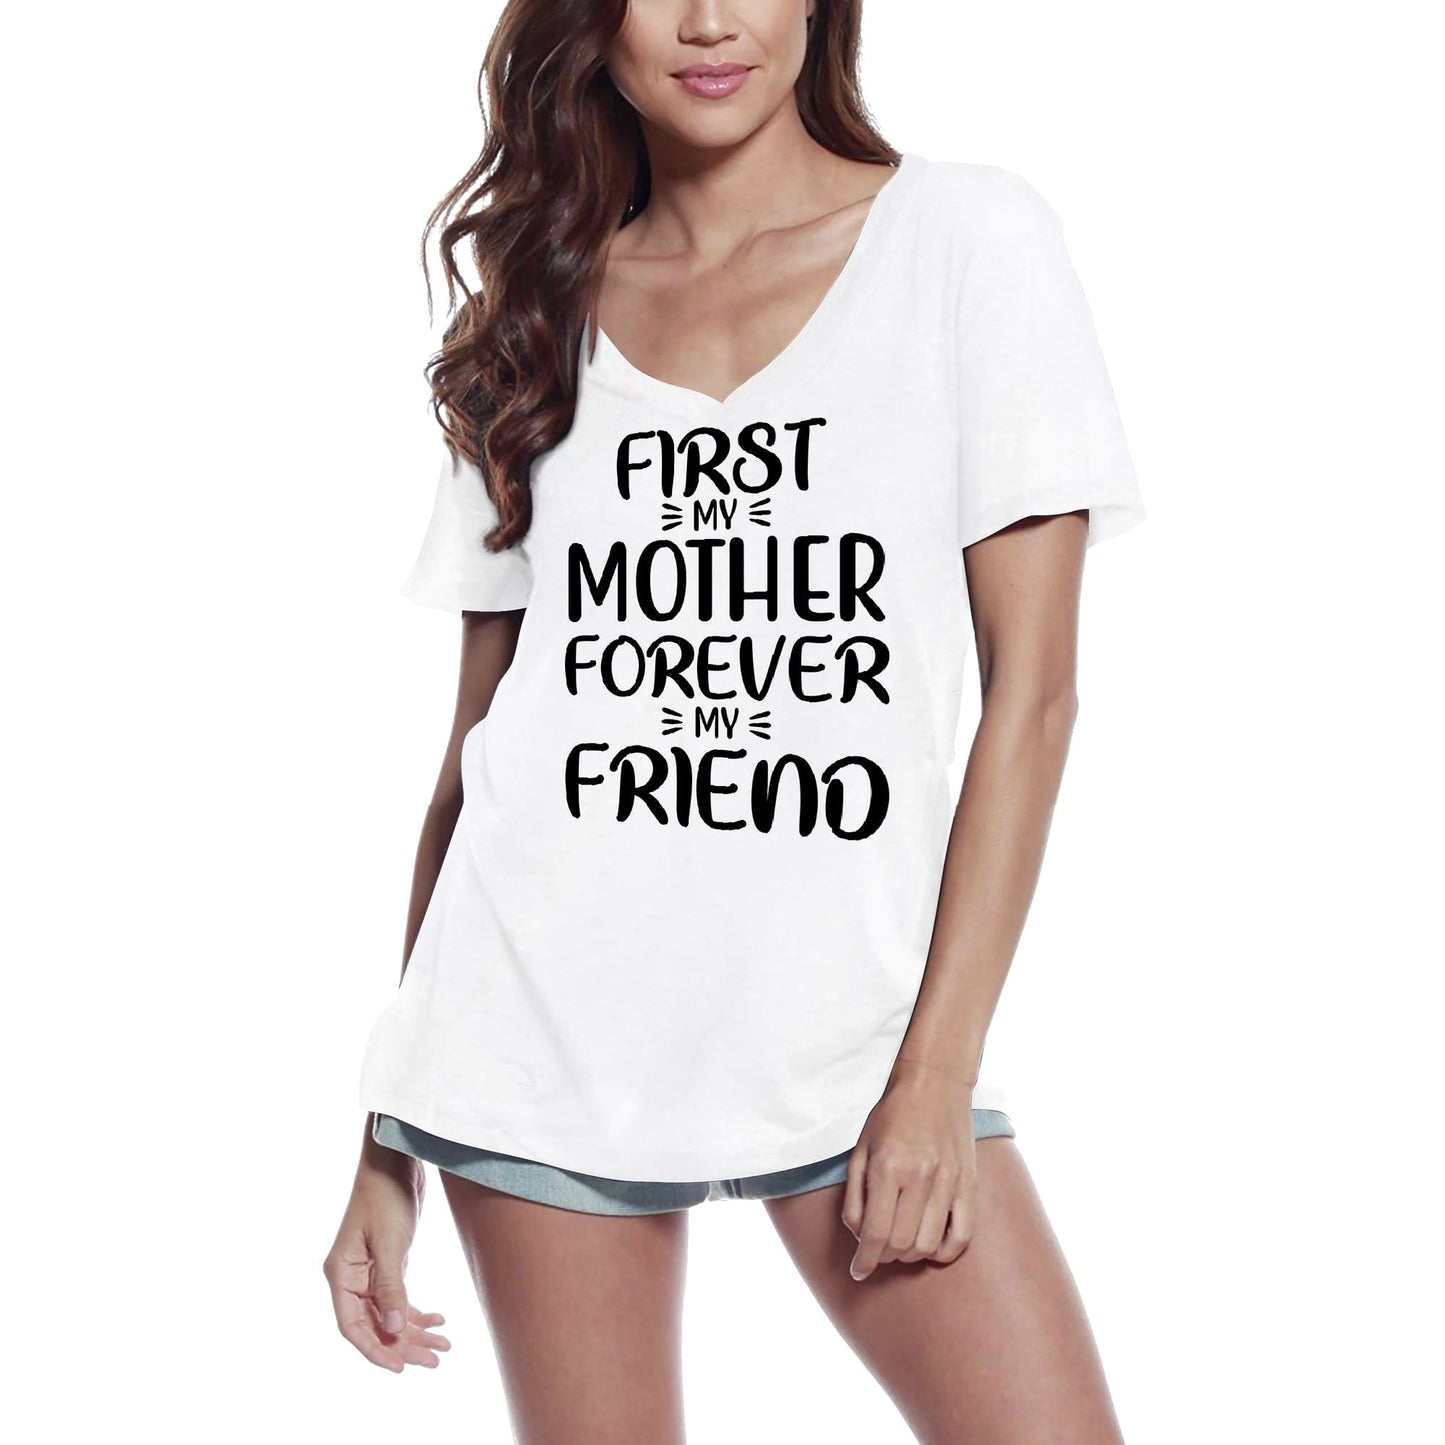 ULTRABASIC Women's T-Shirt First My Mother Forever My Friend - Short Sleeve Tee Shirt Tops